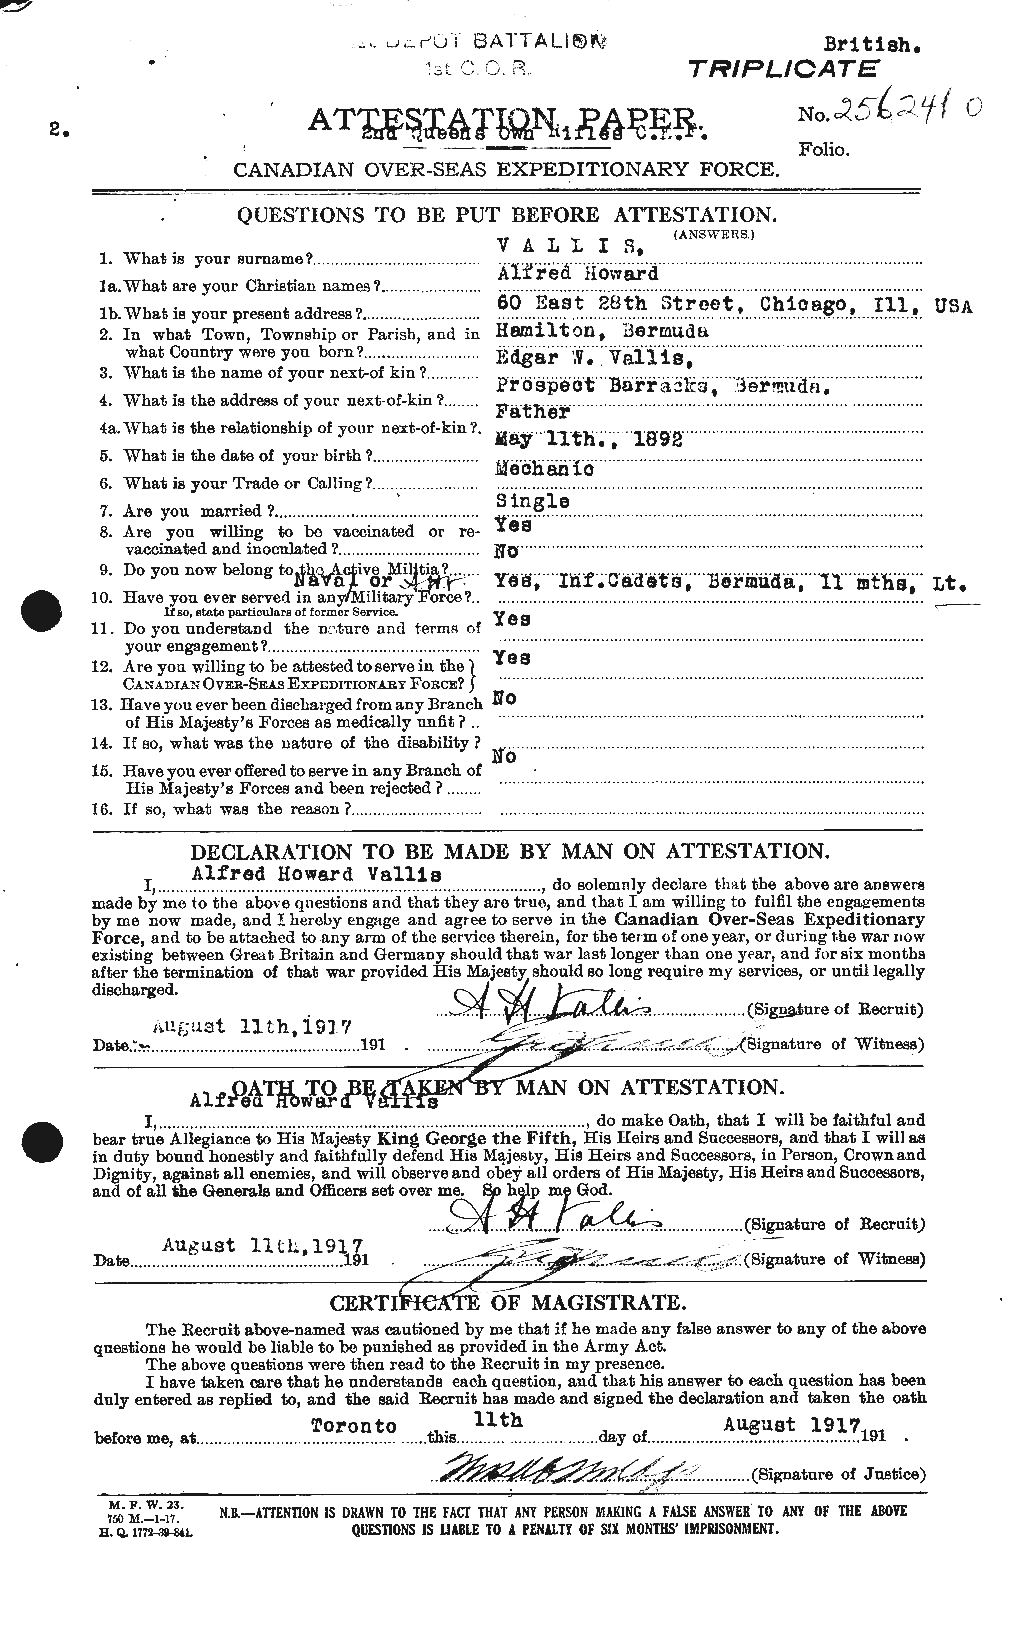 Dossiers du Personnel de la Première Guerre mondiale - CEC 646509a